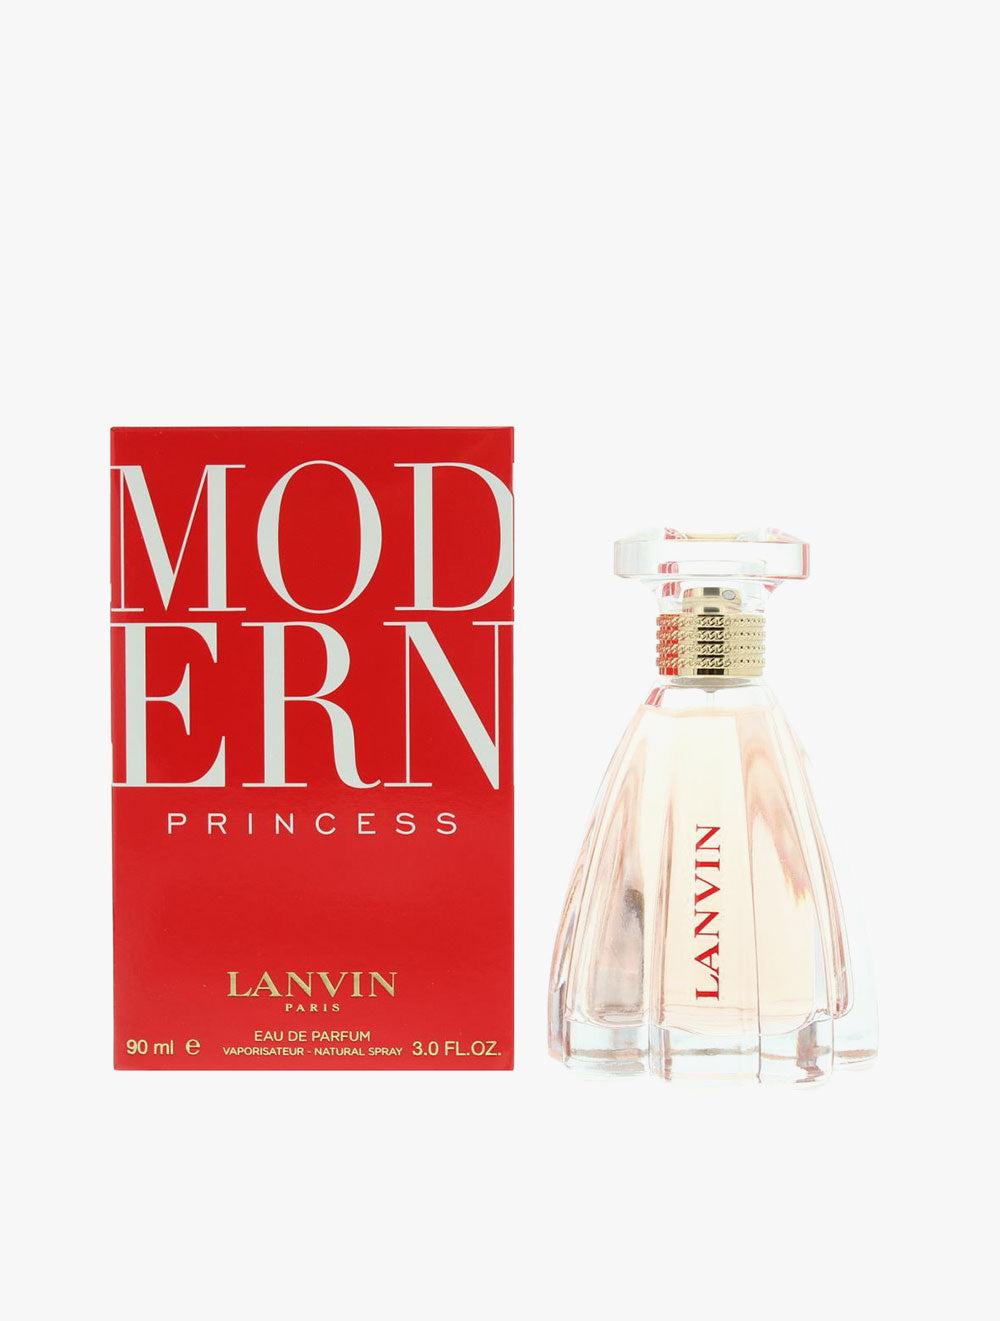 LANVIN MODERN PRINCESS Eau De Parfum